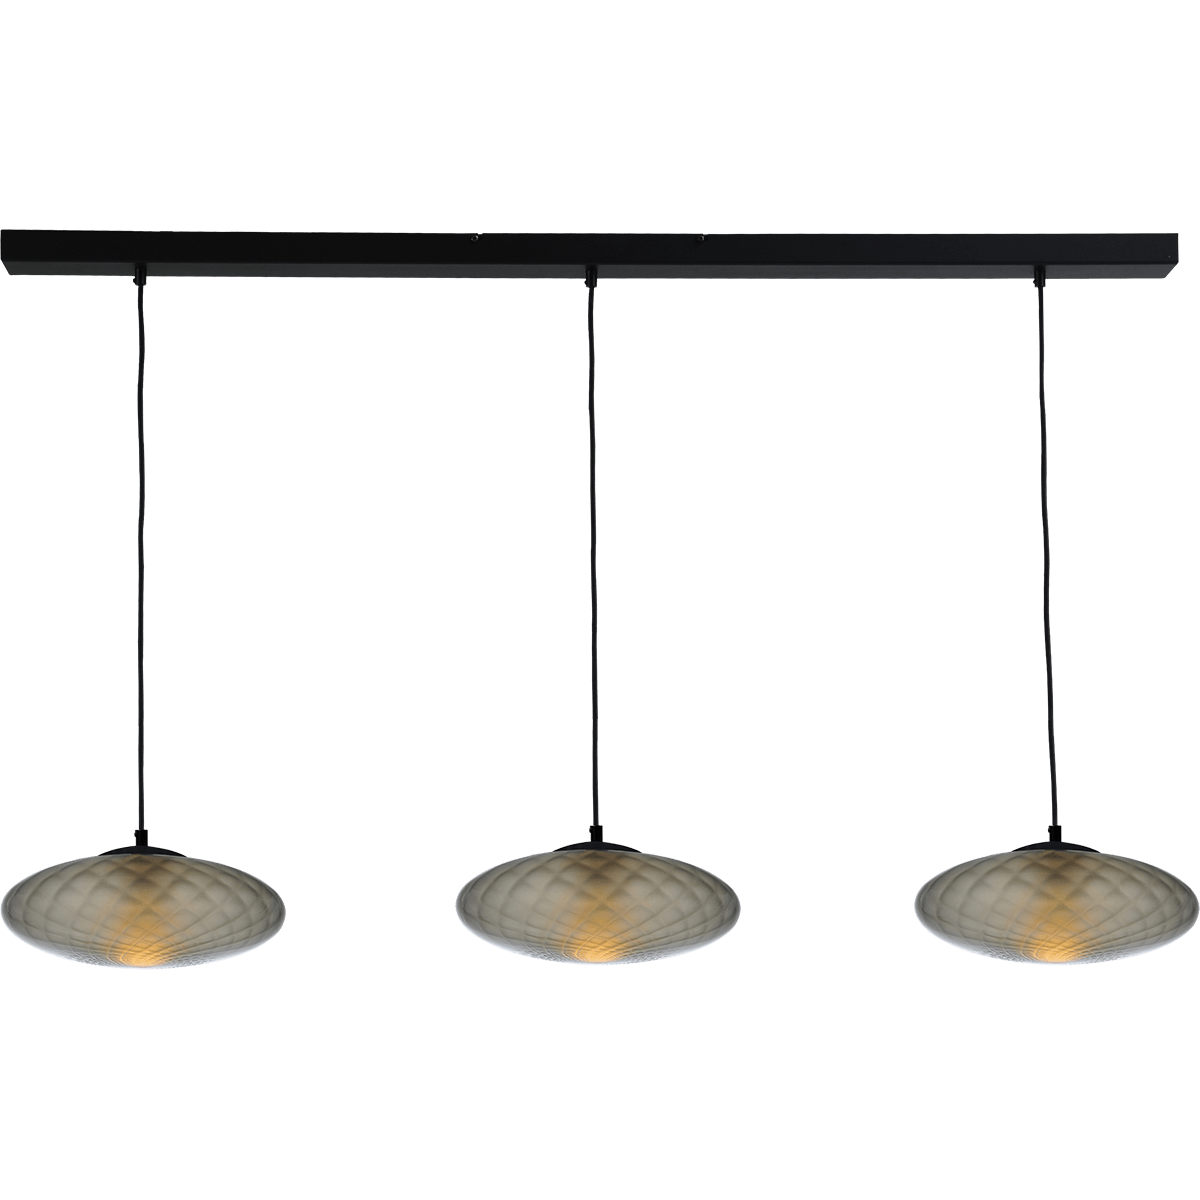 Hanglamp Bottega 3-lichts zwarte plafondplaat 130x8cm - glas smoke Ø30cm - zwarte stoffen kabel 150cm - MASTERLIGHT